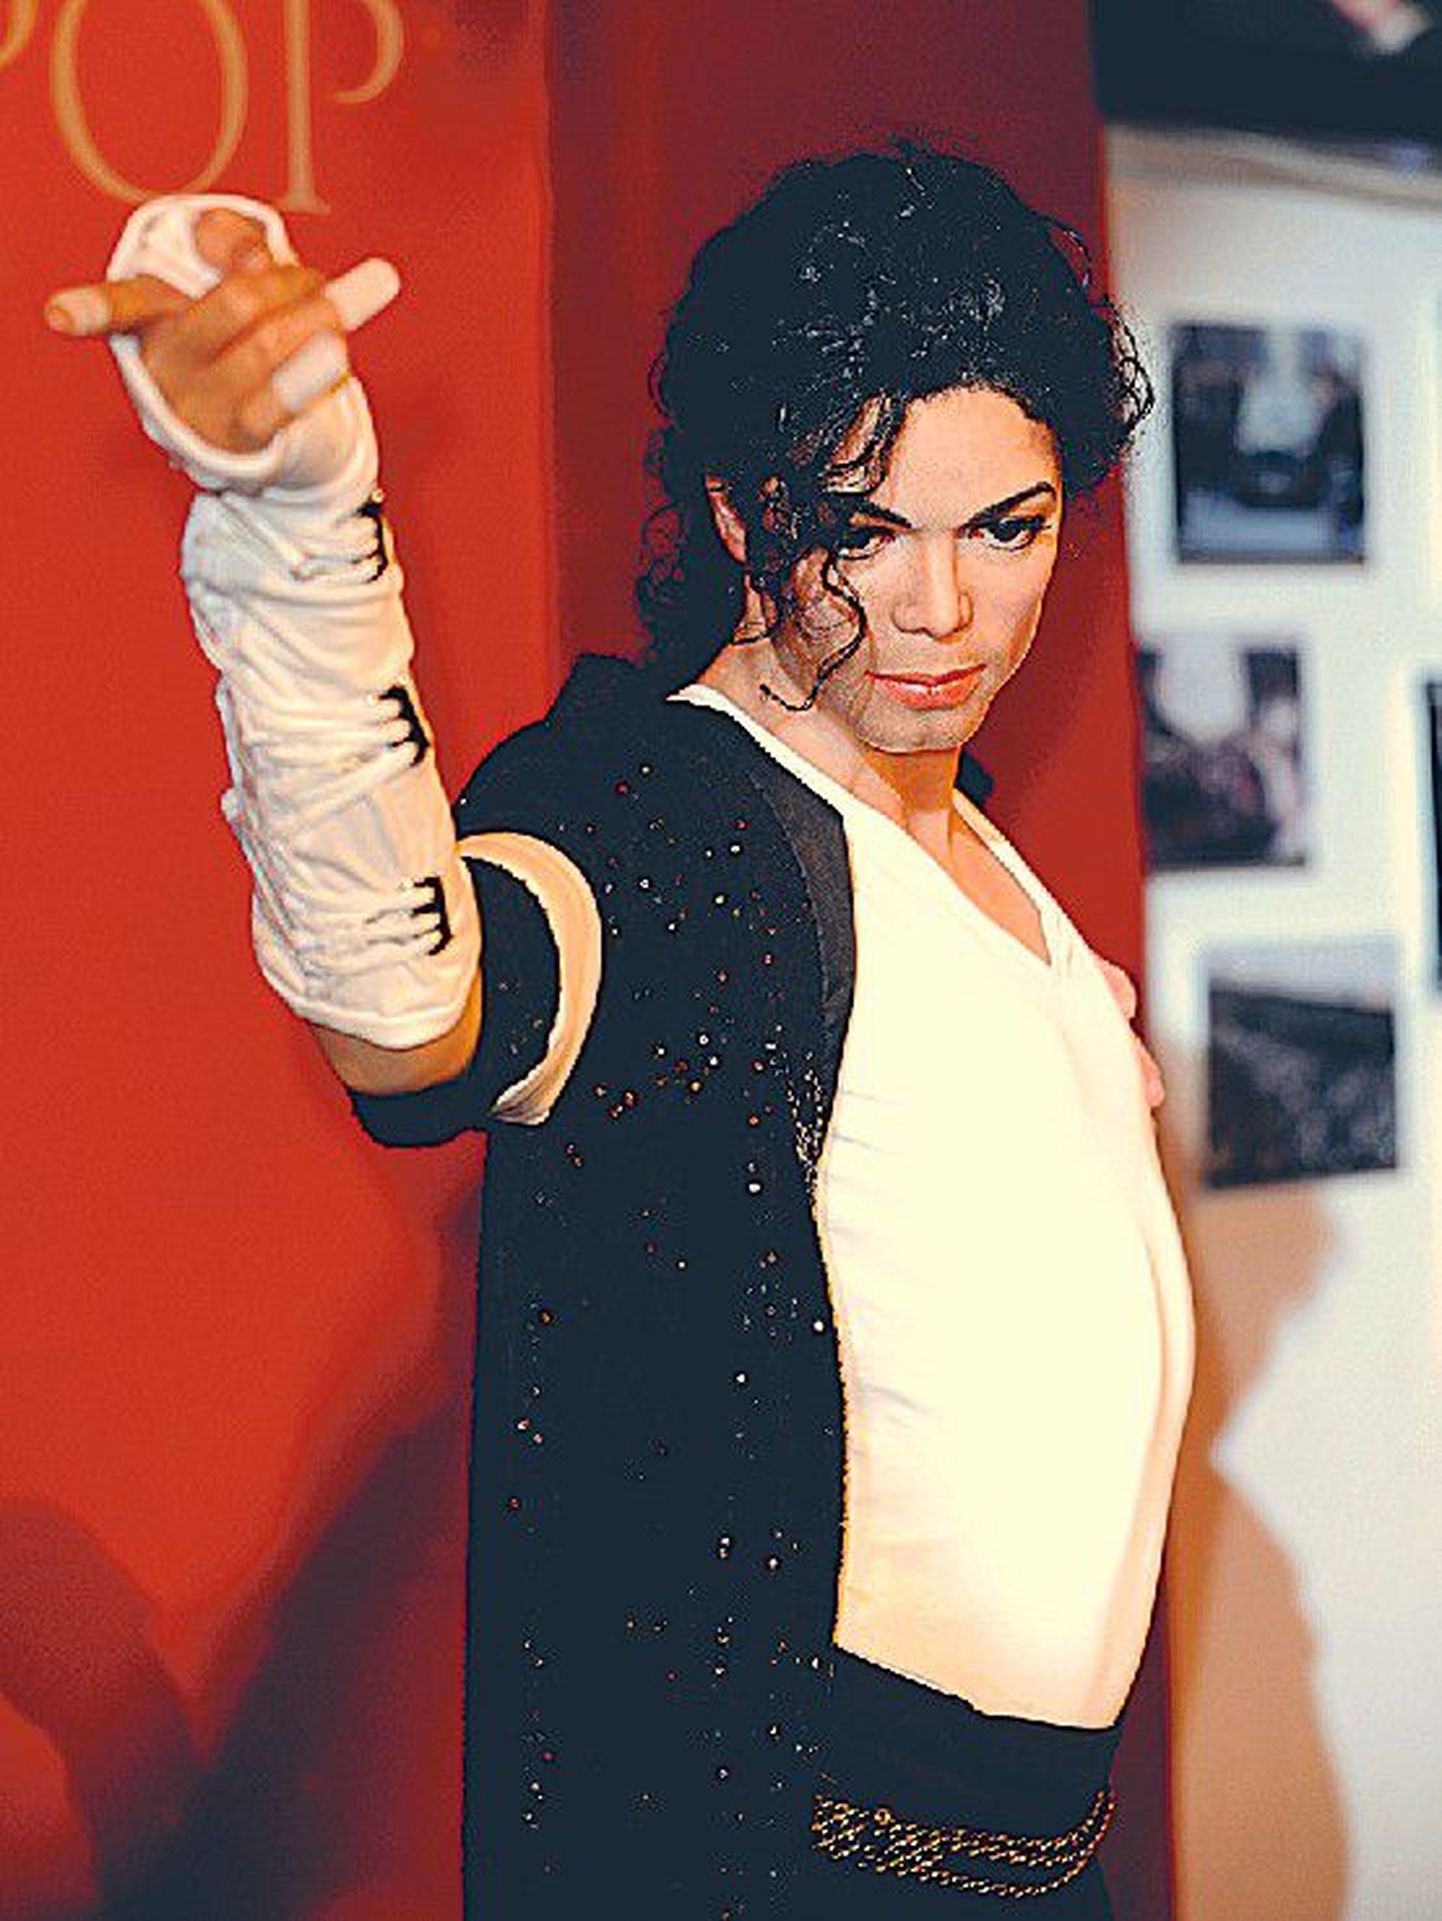 Õige pea pärast Michael Jacksoni surma lisandus  tema järjekordne, juba 13. kuju ka Londonis asuva Madame Tussaud’ vahakujude muuseumi.